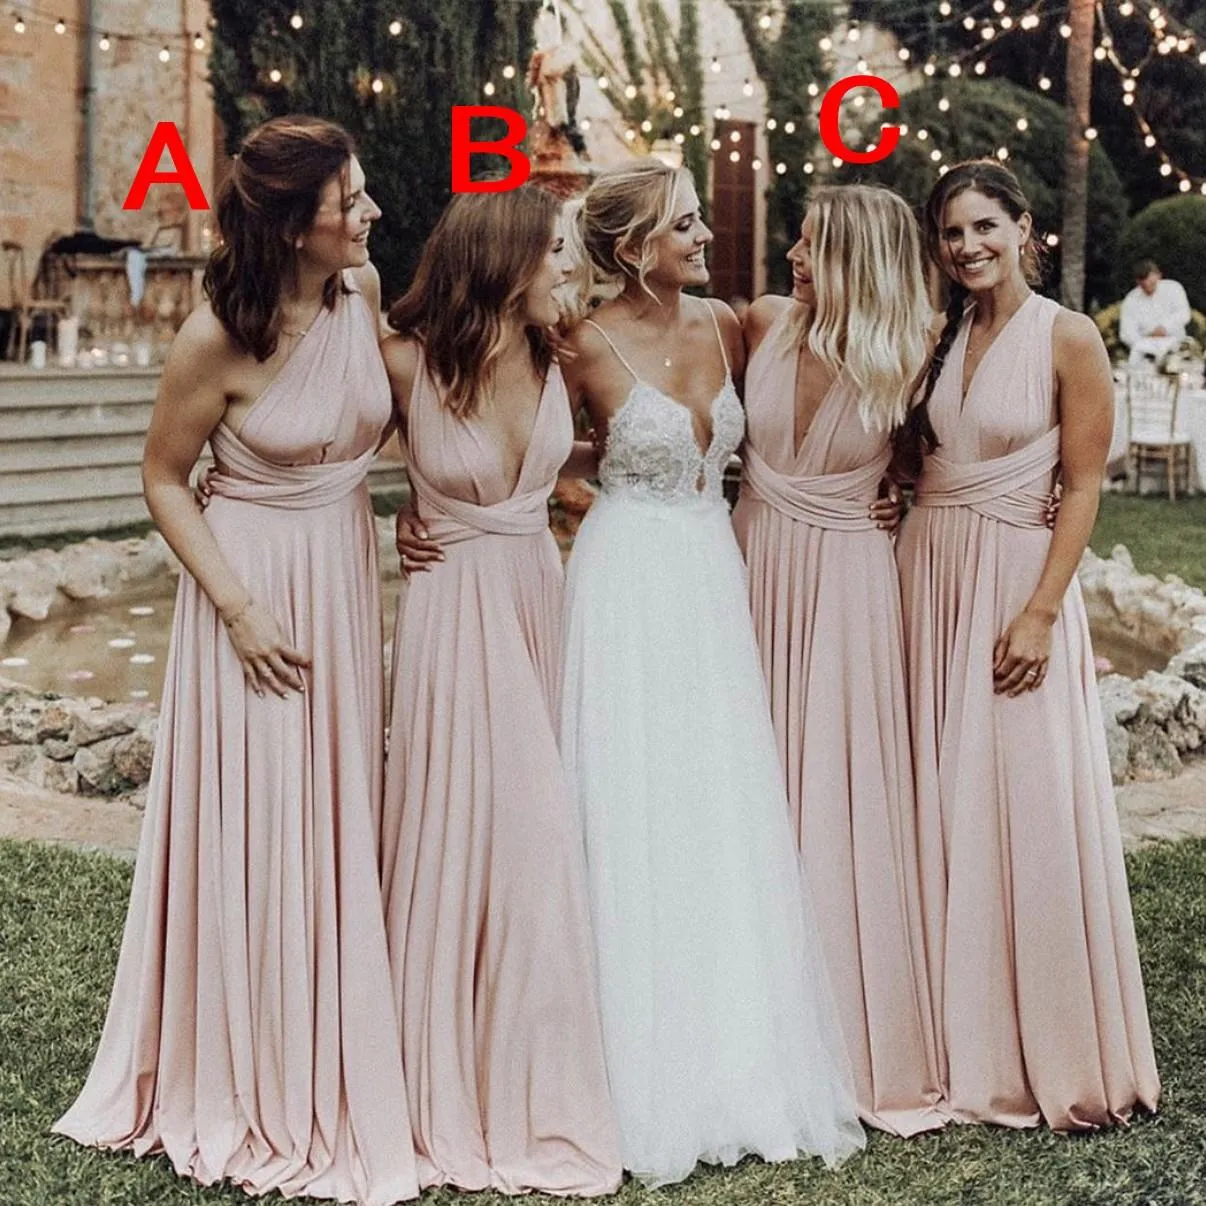 20 Best Satin Bridal Party Dresses